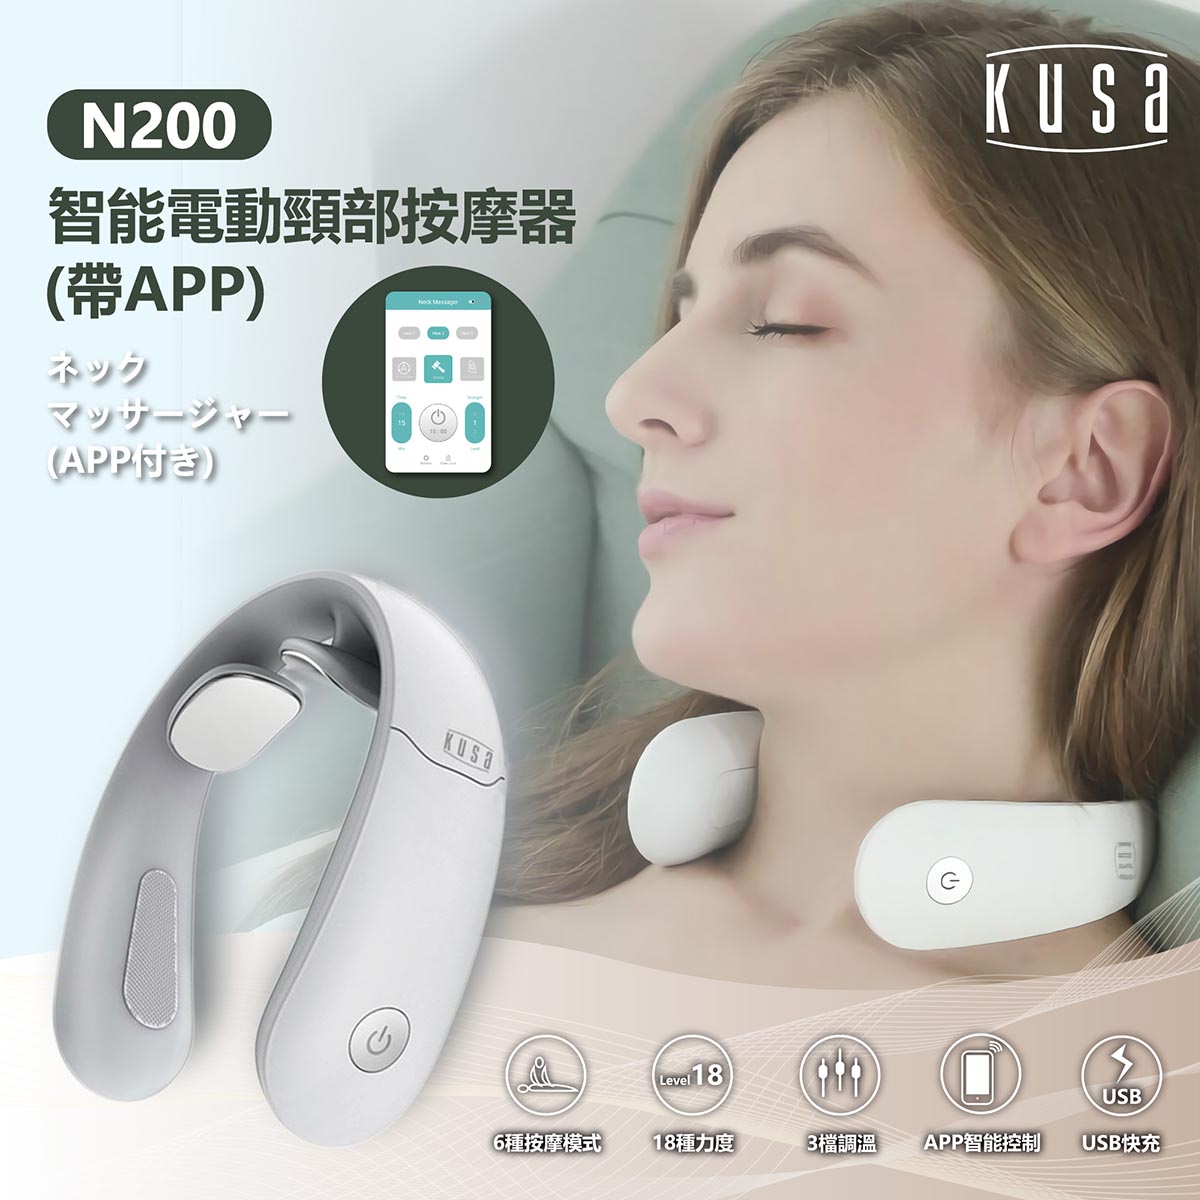 Kusa N200智能電動頸部按摩器 (帶APP)